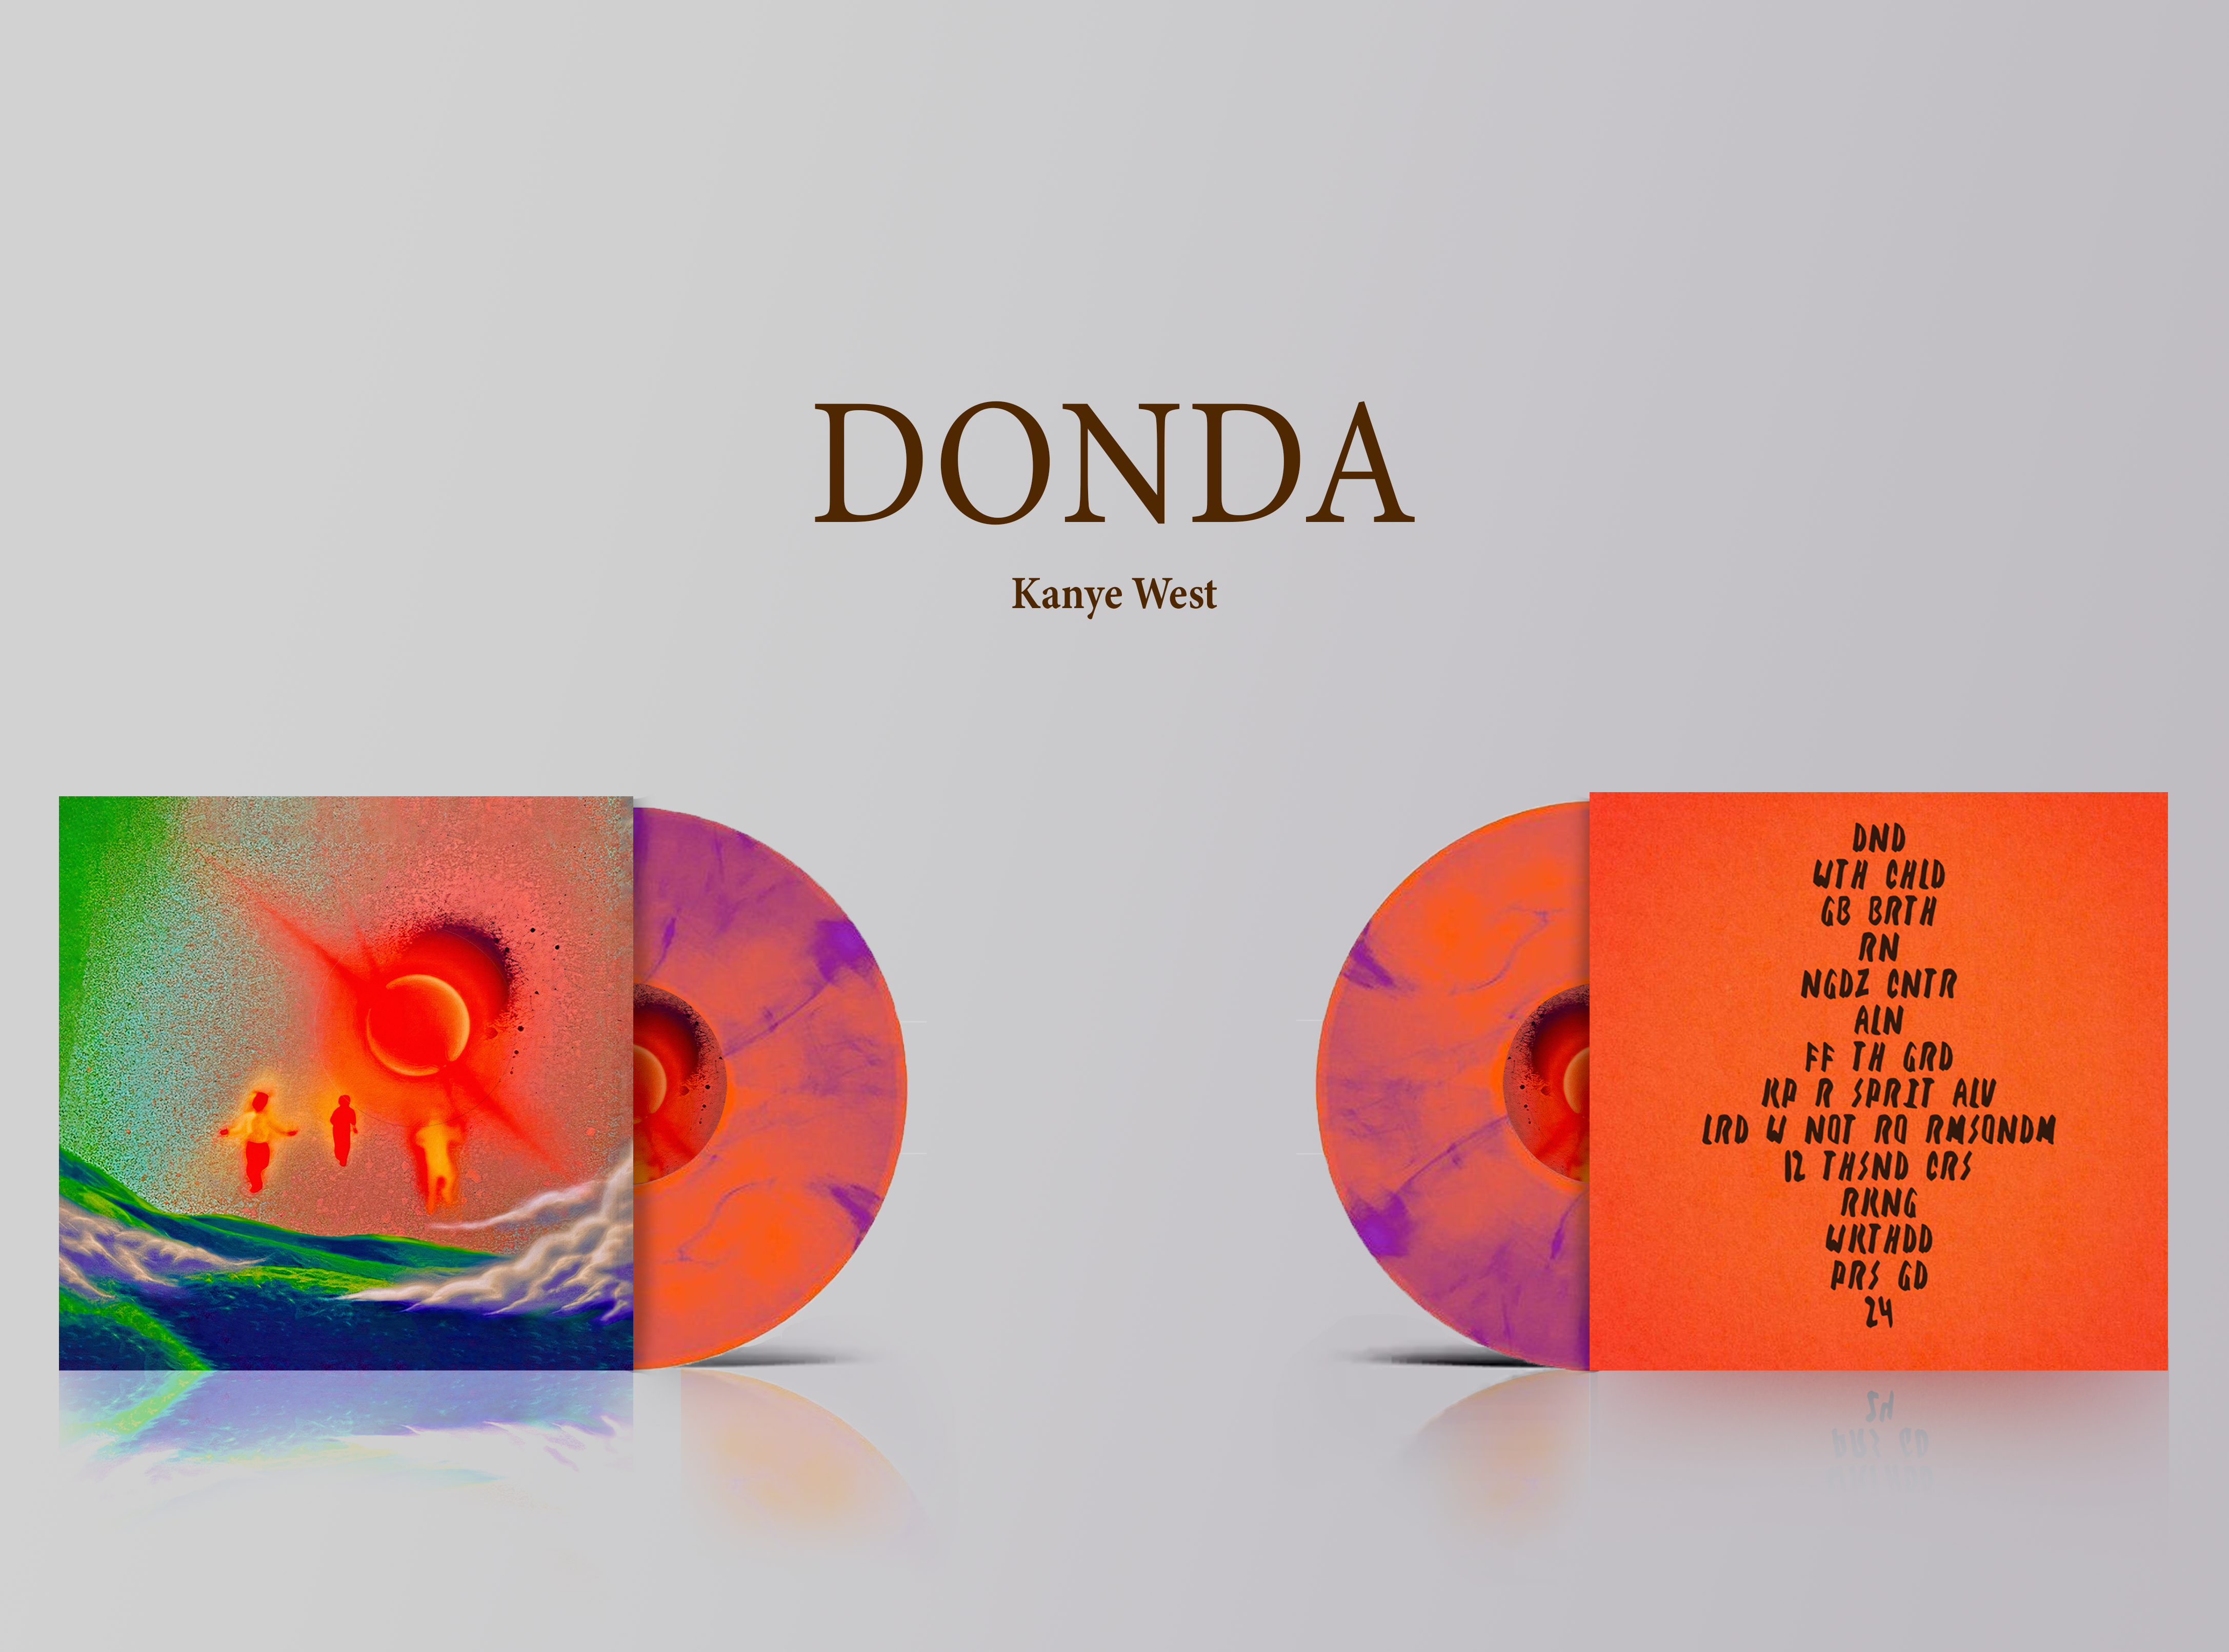 «donda»: как канье уэст заставил весь мир наблюдать за релизом альбома, который не оправдал больших ожиданий